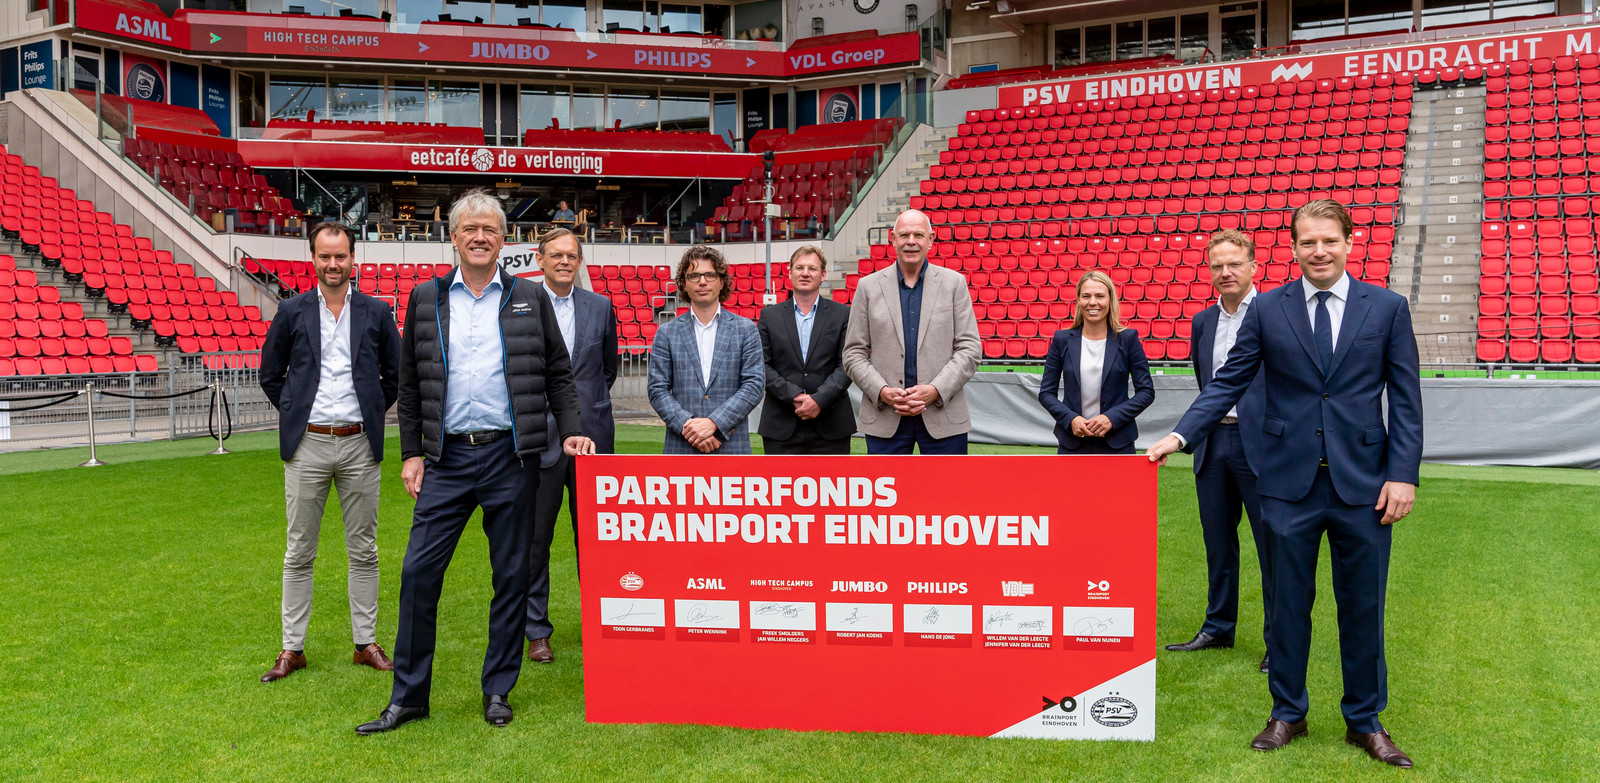 Het Partnerfonds Brainport Eindhoven, gepresenteerd in het Philips Stadion.